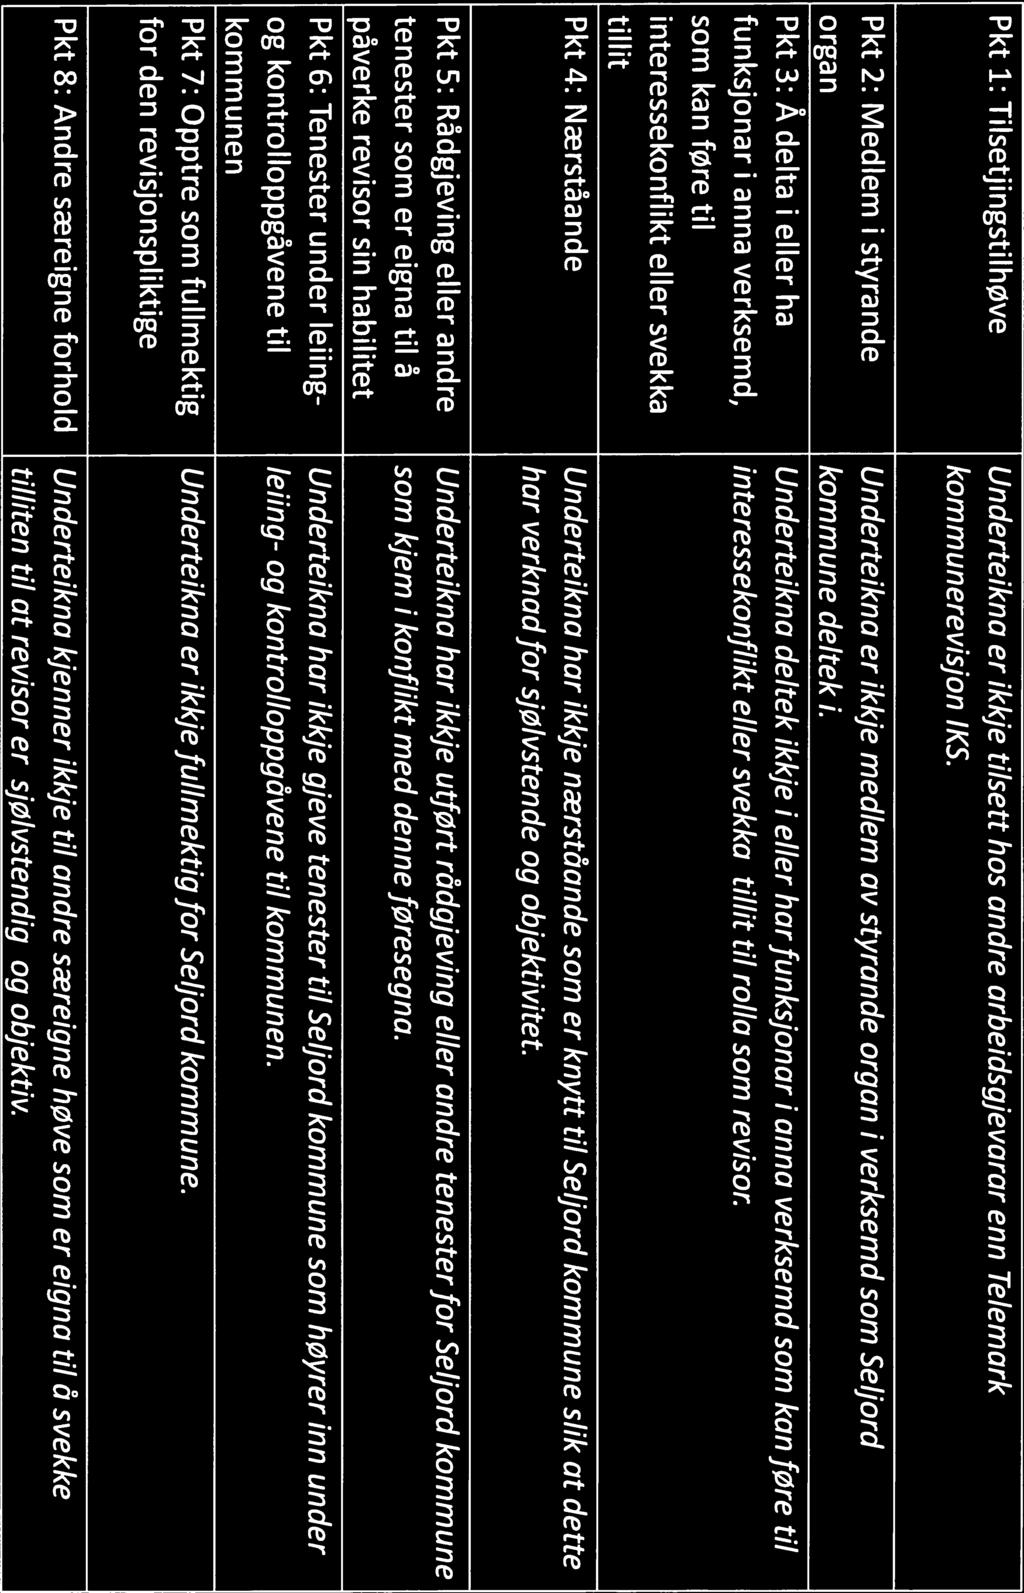 3/19 Vurdering av forvaltningsrevisors sjølvstende - Seljord kommune - 19/02804-1 Vurdering av forvaltningsrevisors sjølvstende - Seljord kommune : Seljord kommune -